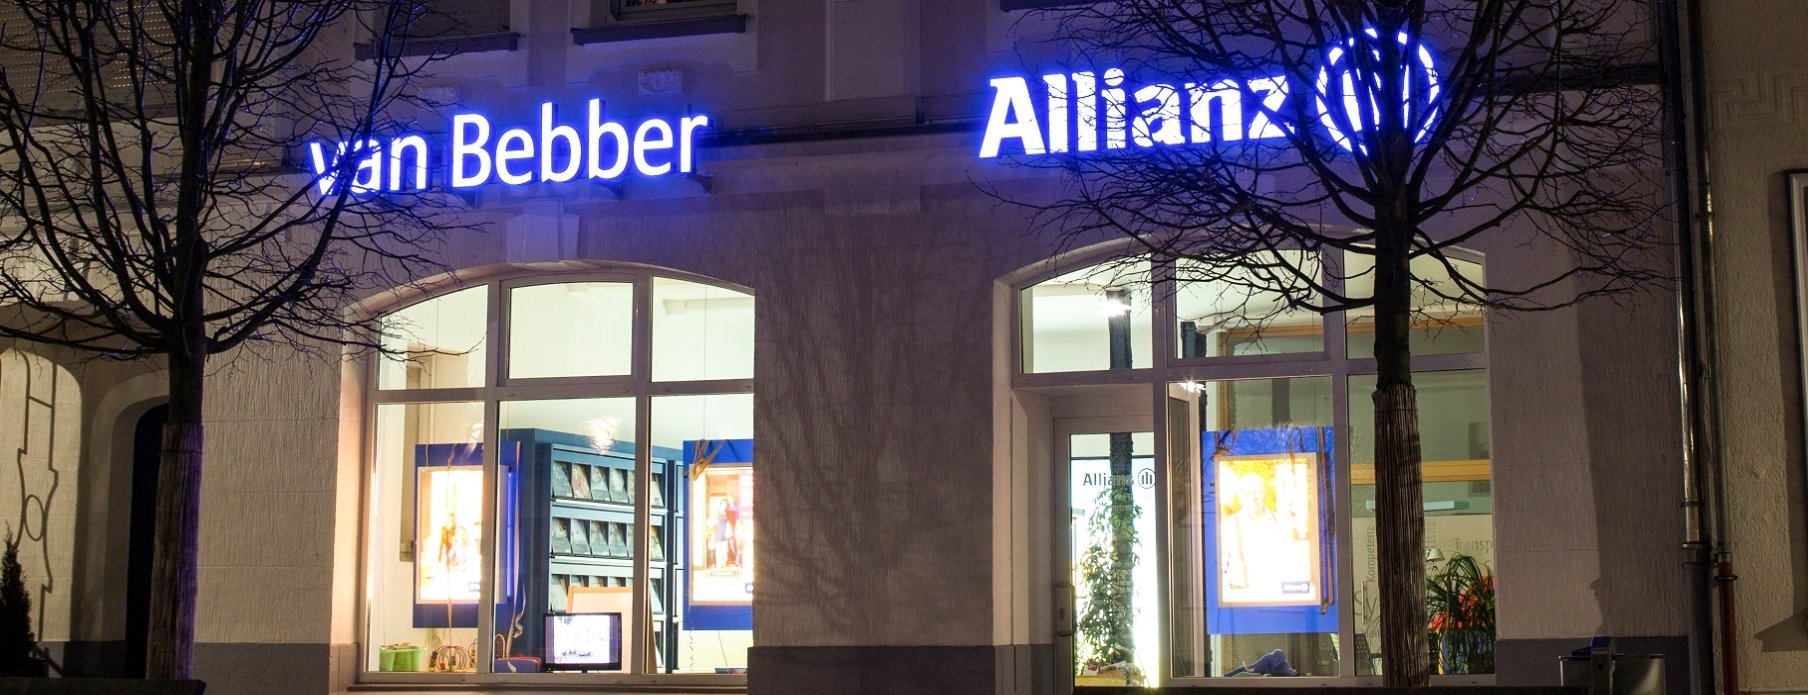 Allianz Versicherung Christian van Bebber Rheinberg - van Bebber - Allianz Rheinberg